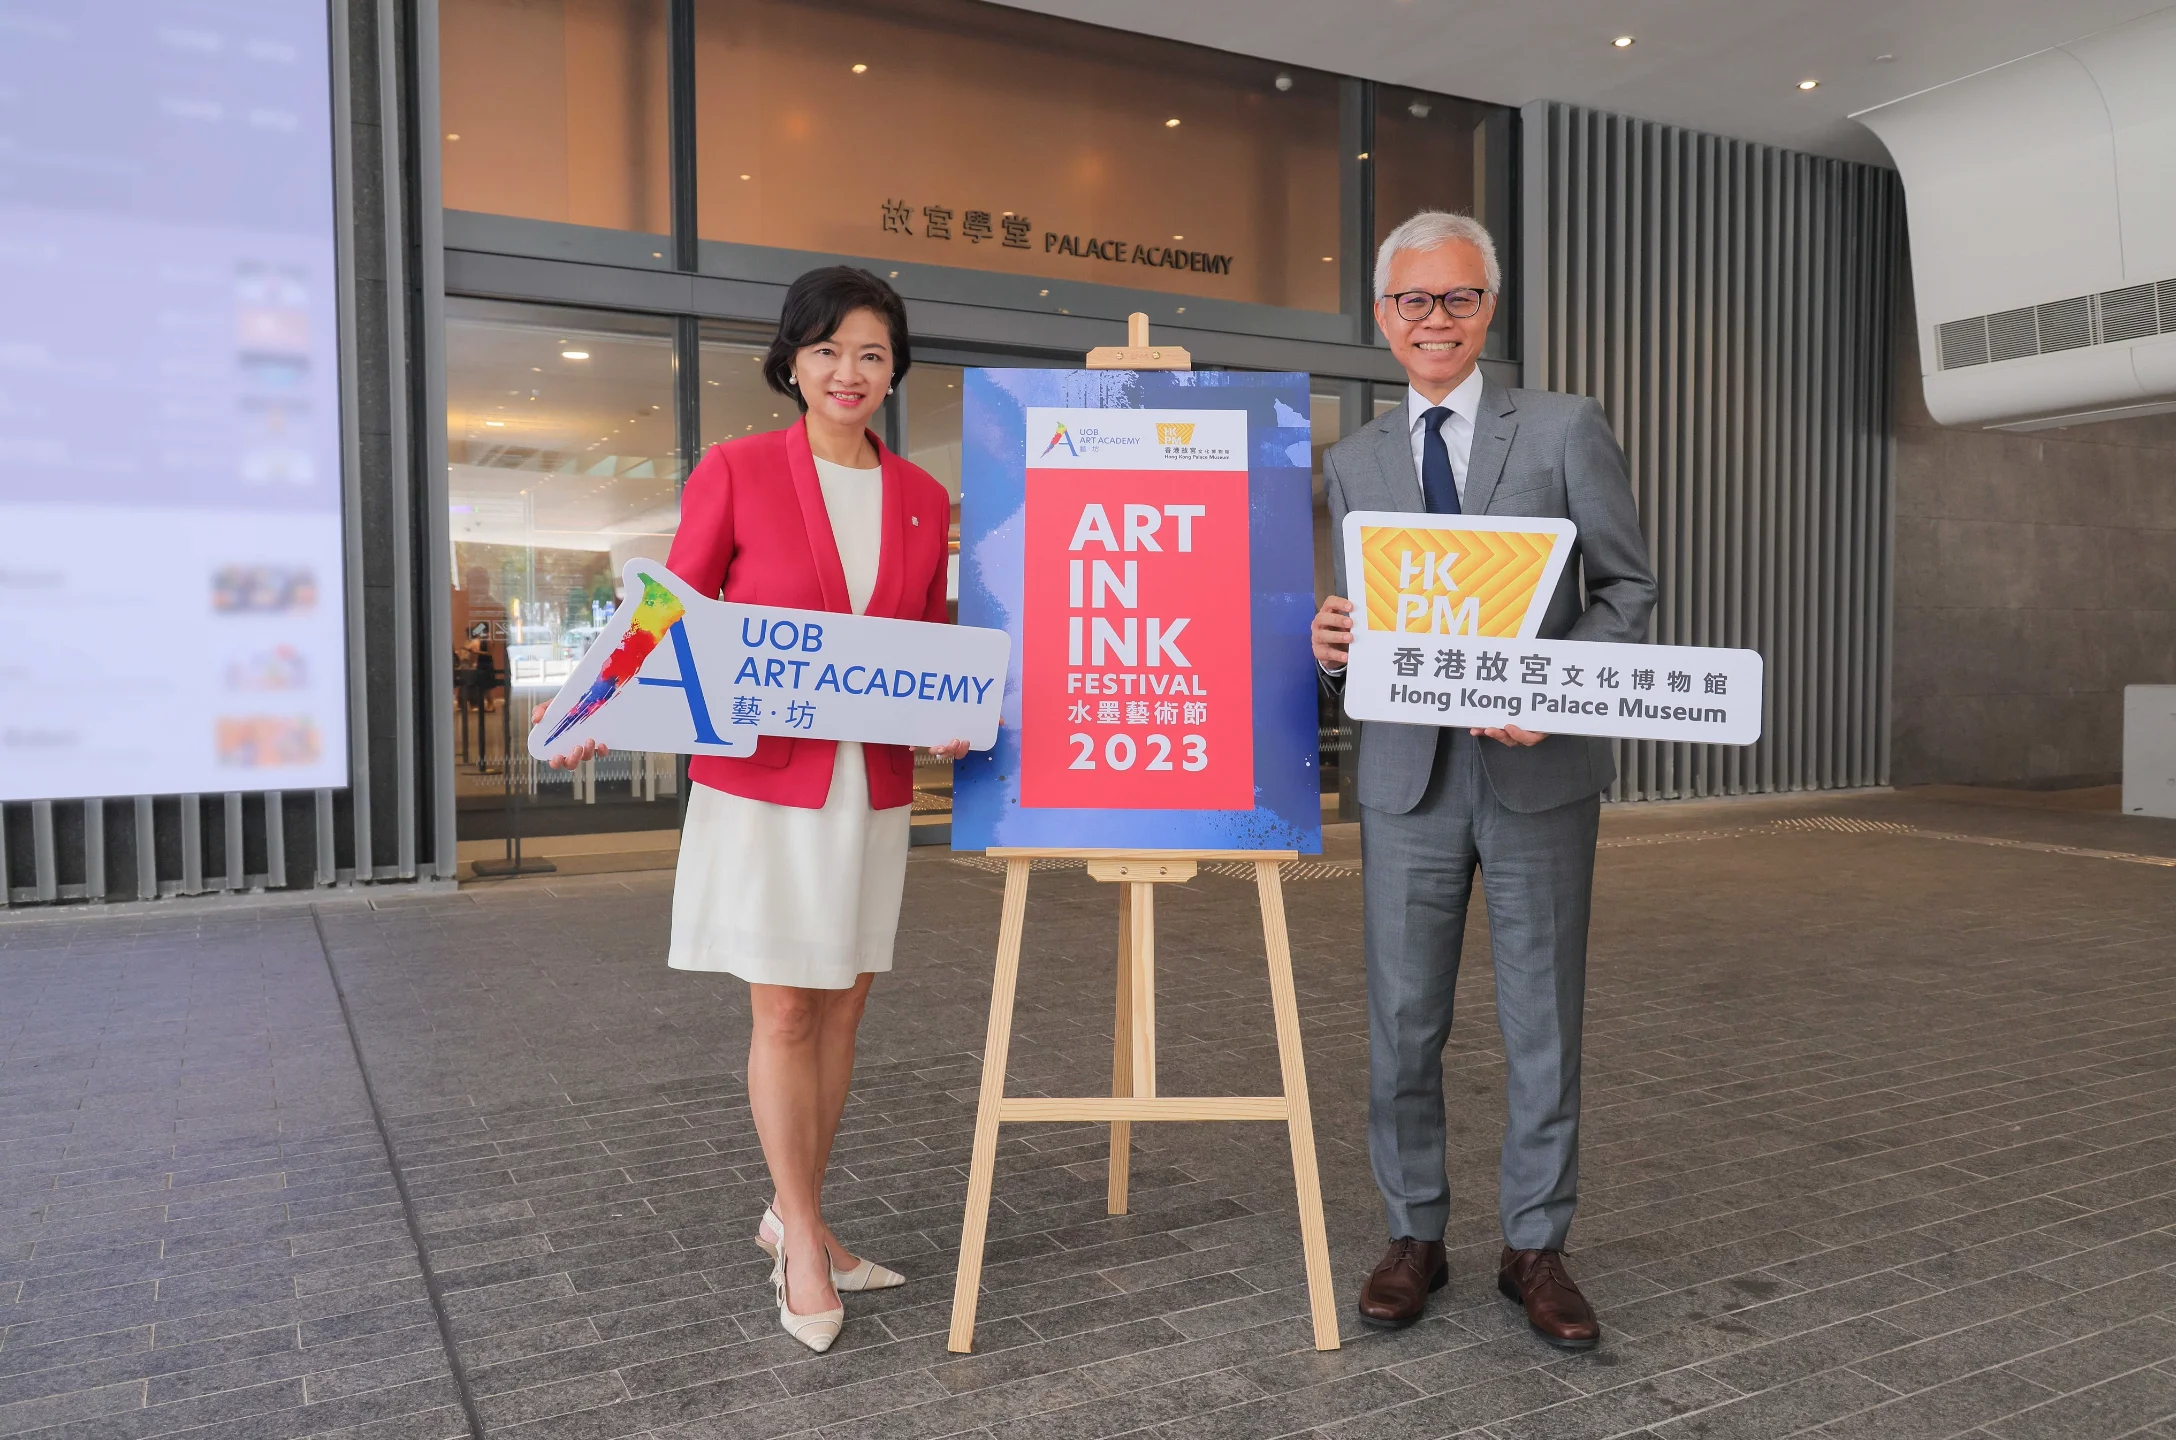 (左起)大華銀行大中華區行政總裁兼集團傳播及品牌策略管理部主管葉楊詩明女士，以及香港故宮文化博物館館長吳志華博士共同呈獻第二屆水墨藝術節一系列的精彩活動。